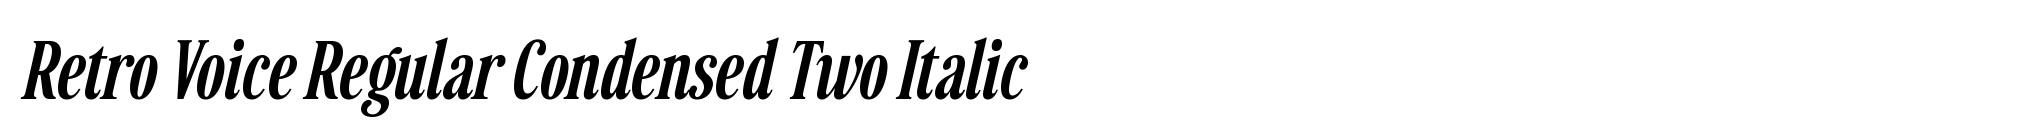 Retro Voice Regular Condensed Two Italic image